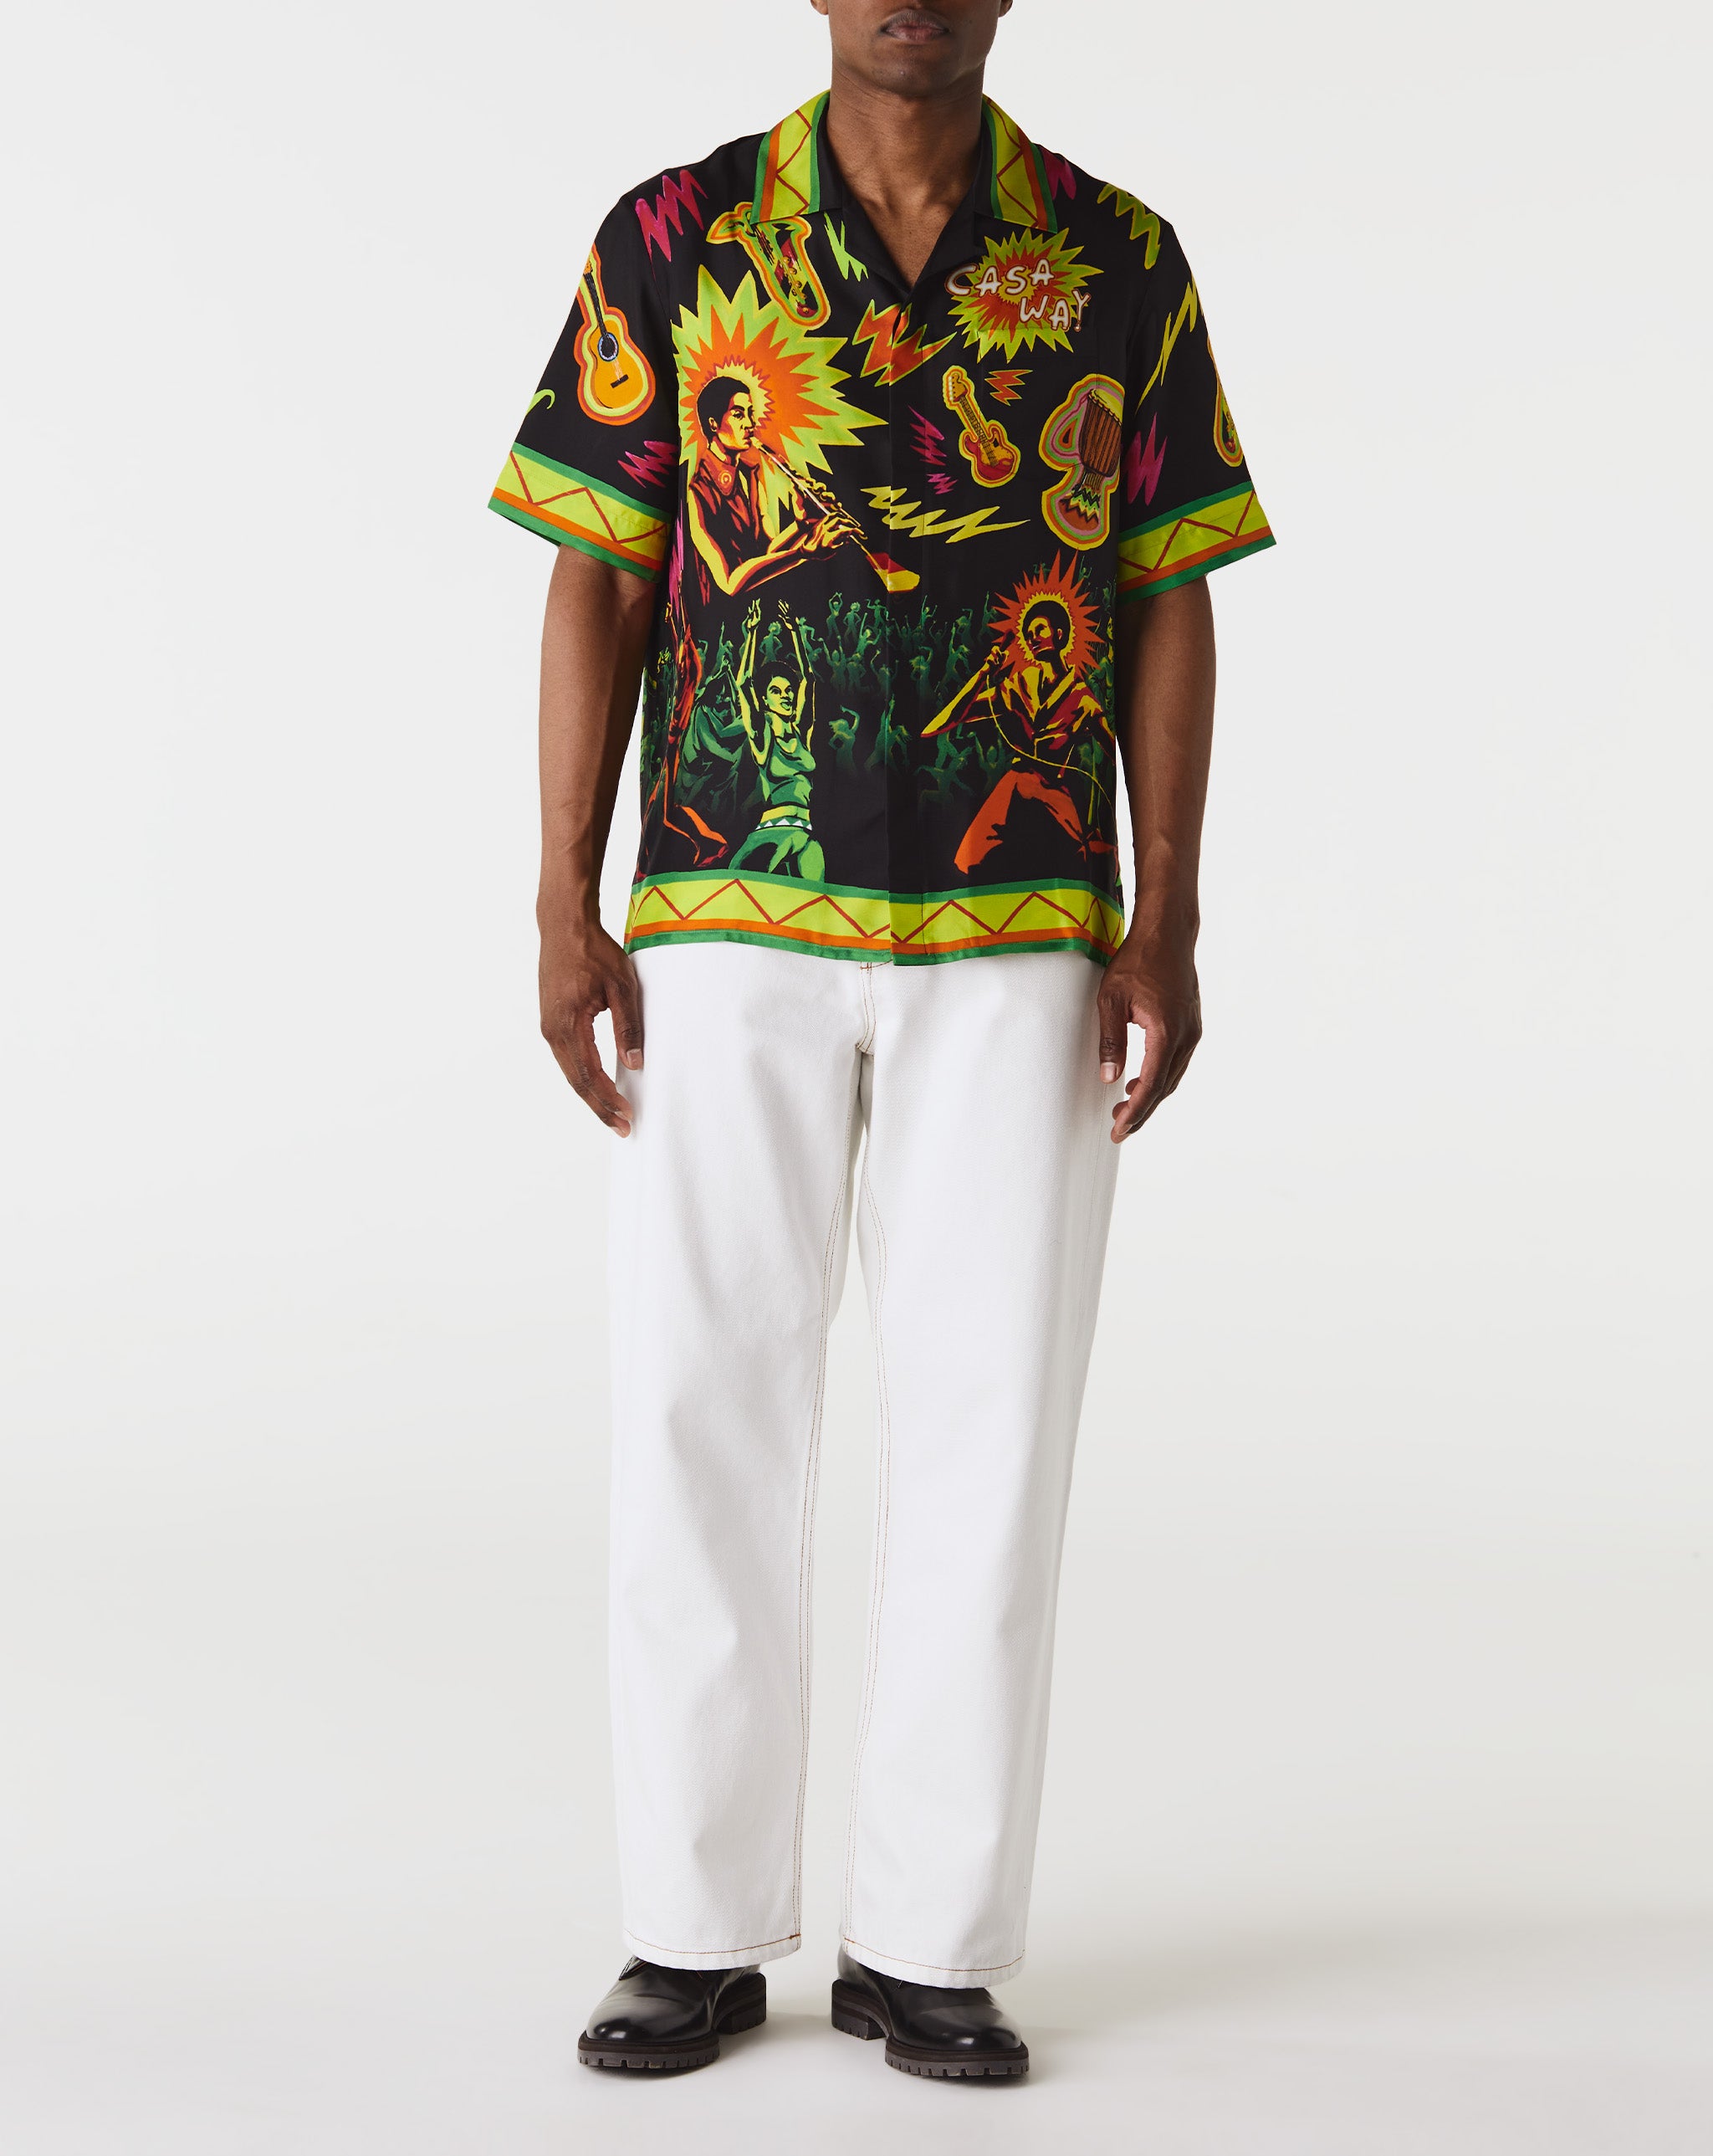 Casablanca adidas Originals AOP T-Shirt  - Cheap Urlfreeze Jordan outlet